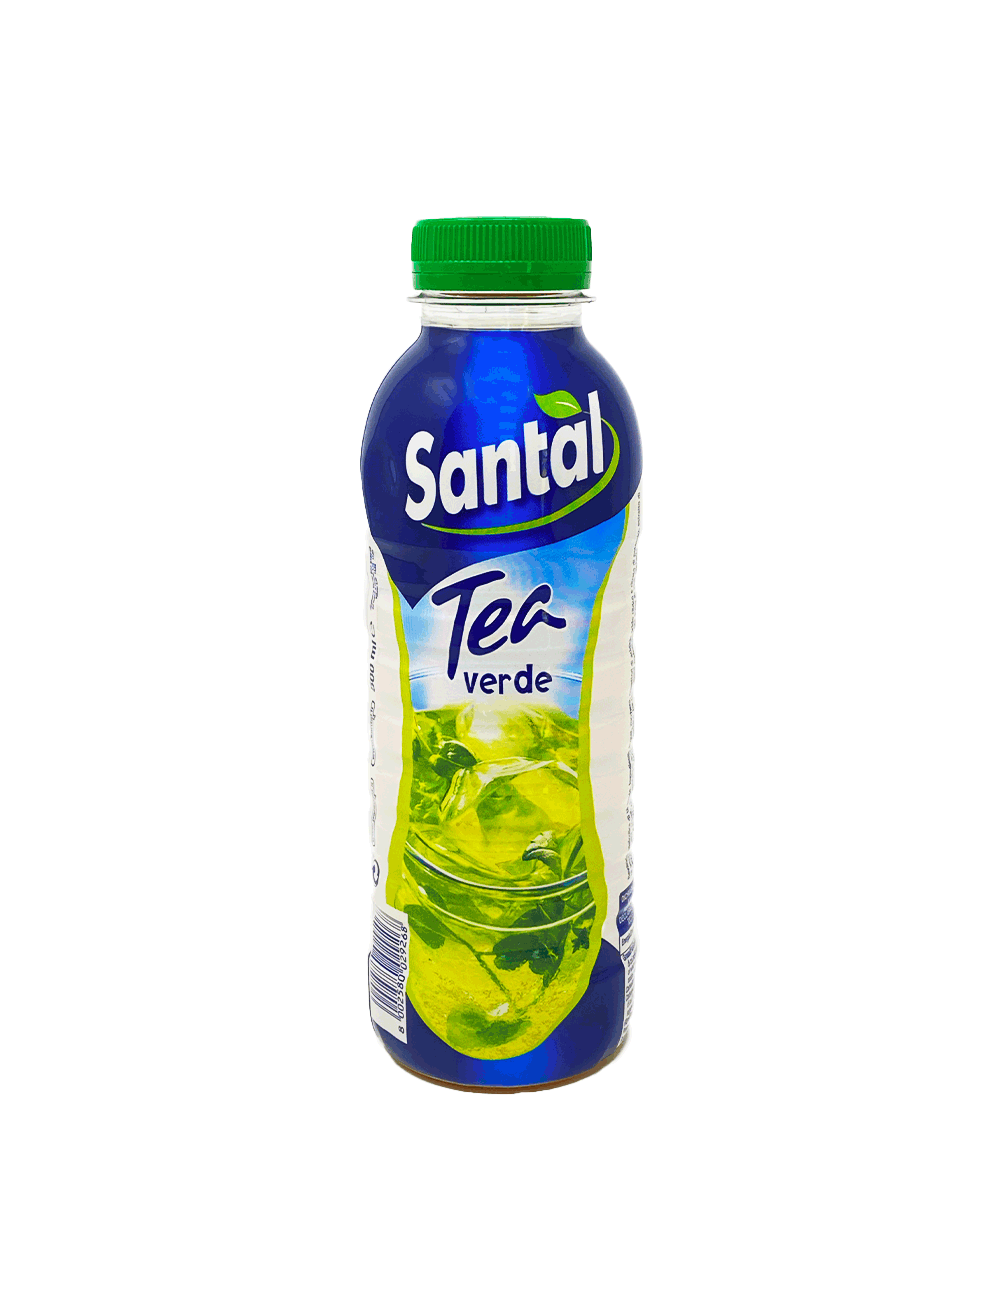 Santal Tea Verde pet Parmalat 500ml